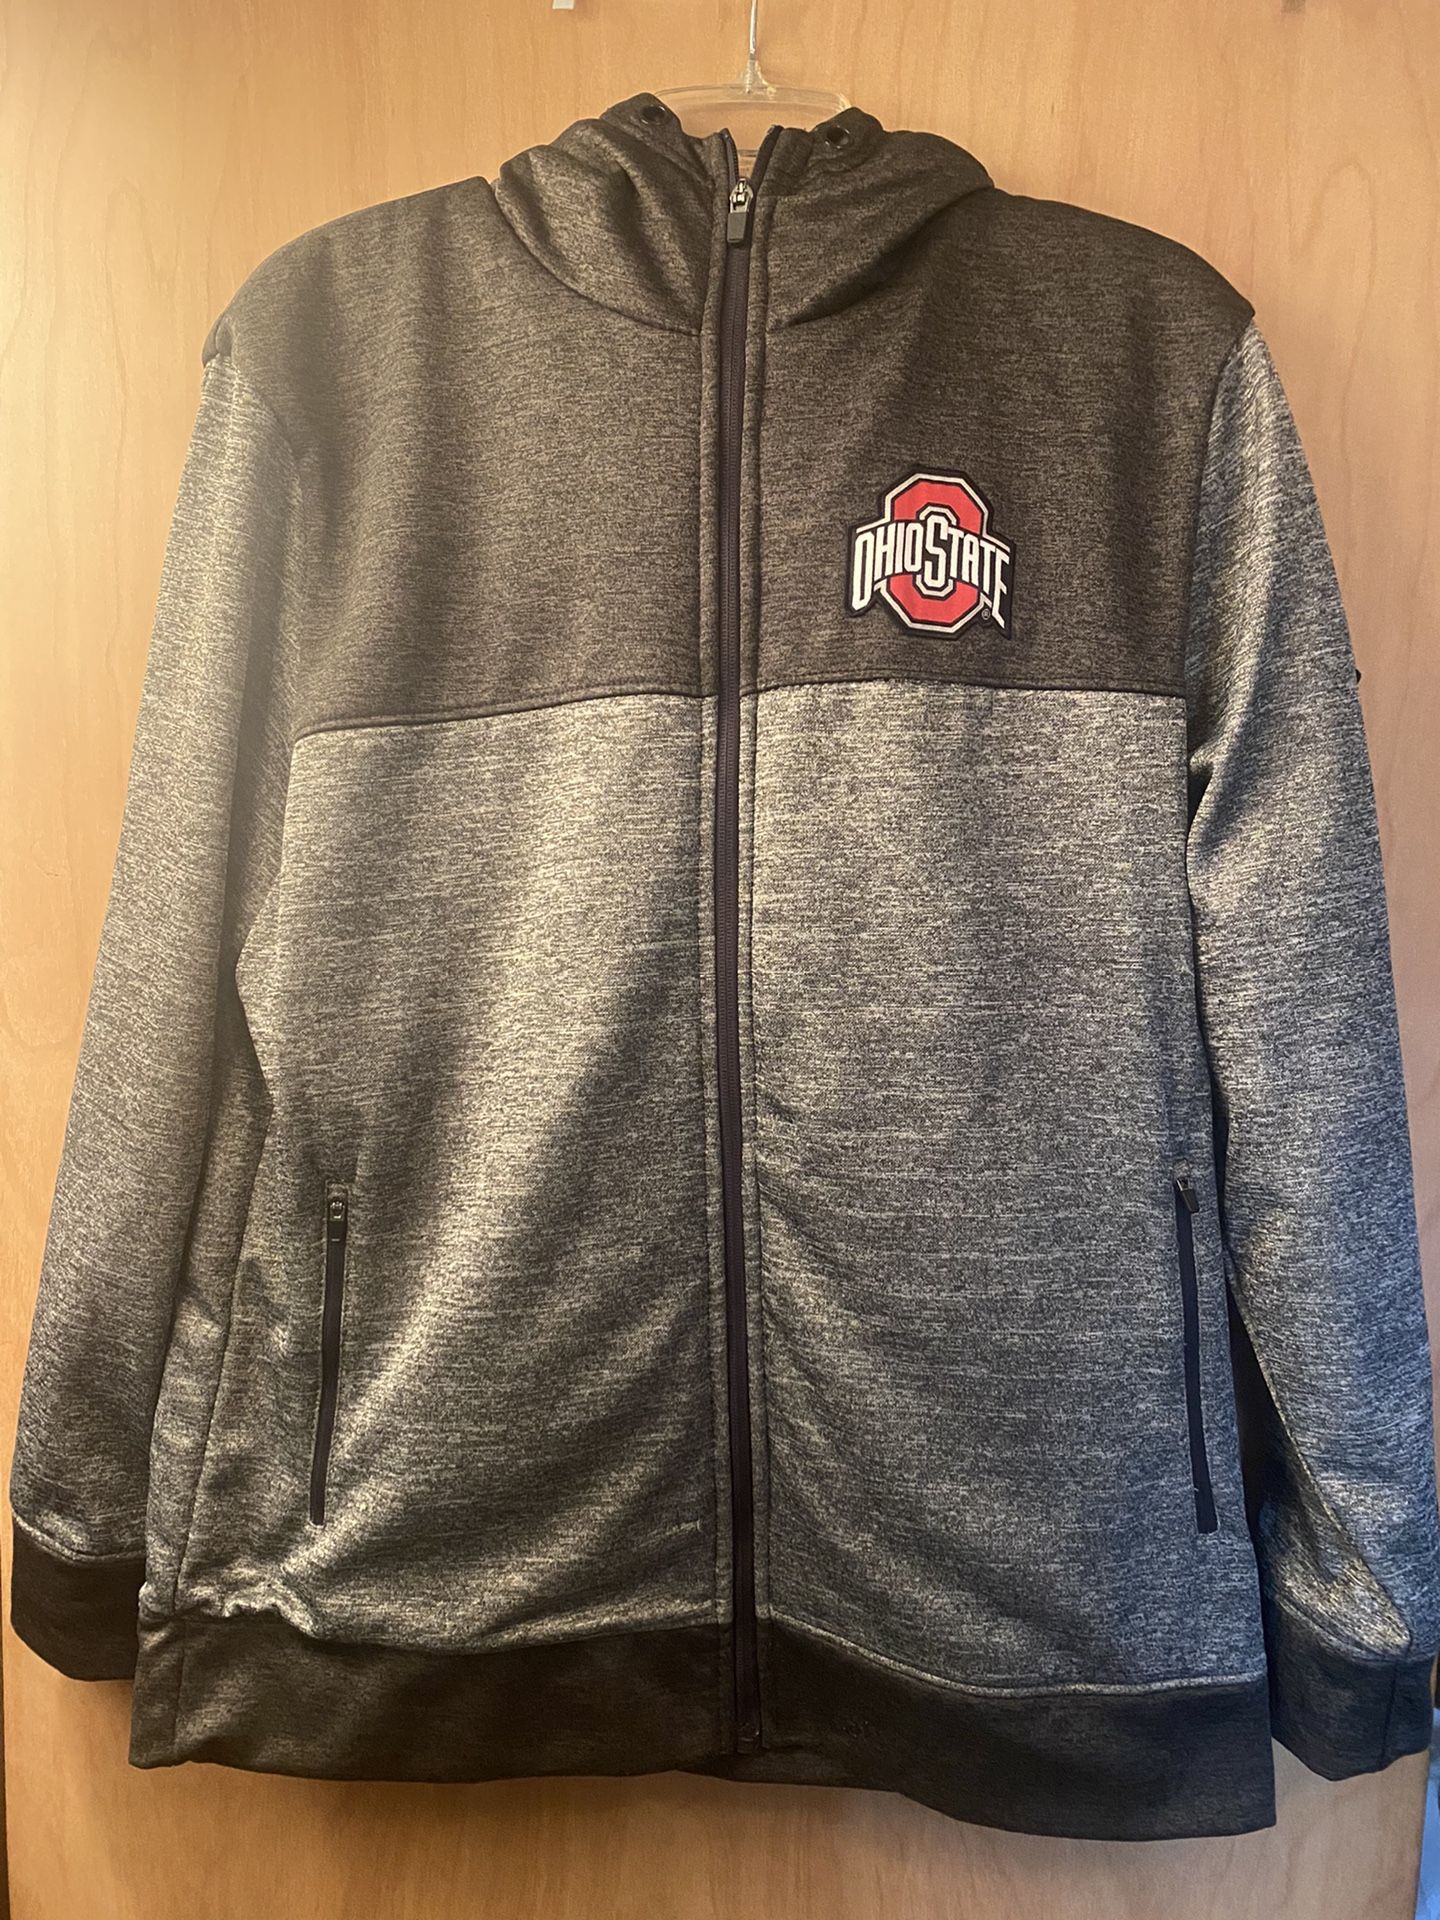 Ohio State Jacket Size Large